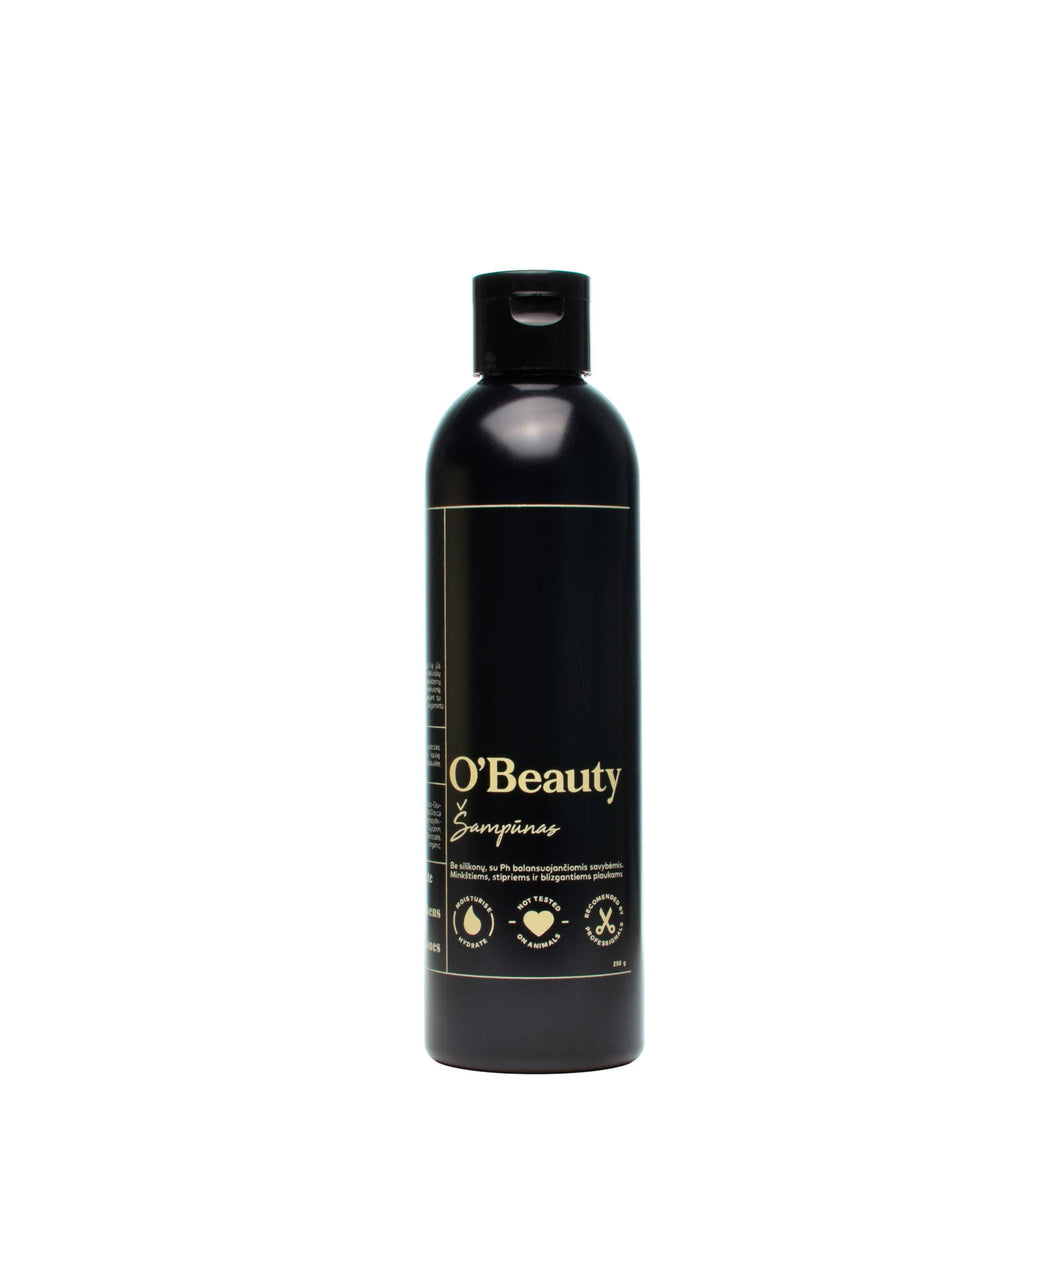 O'Beauty shampoo 250g